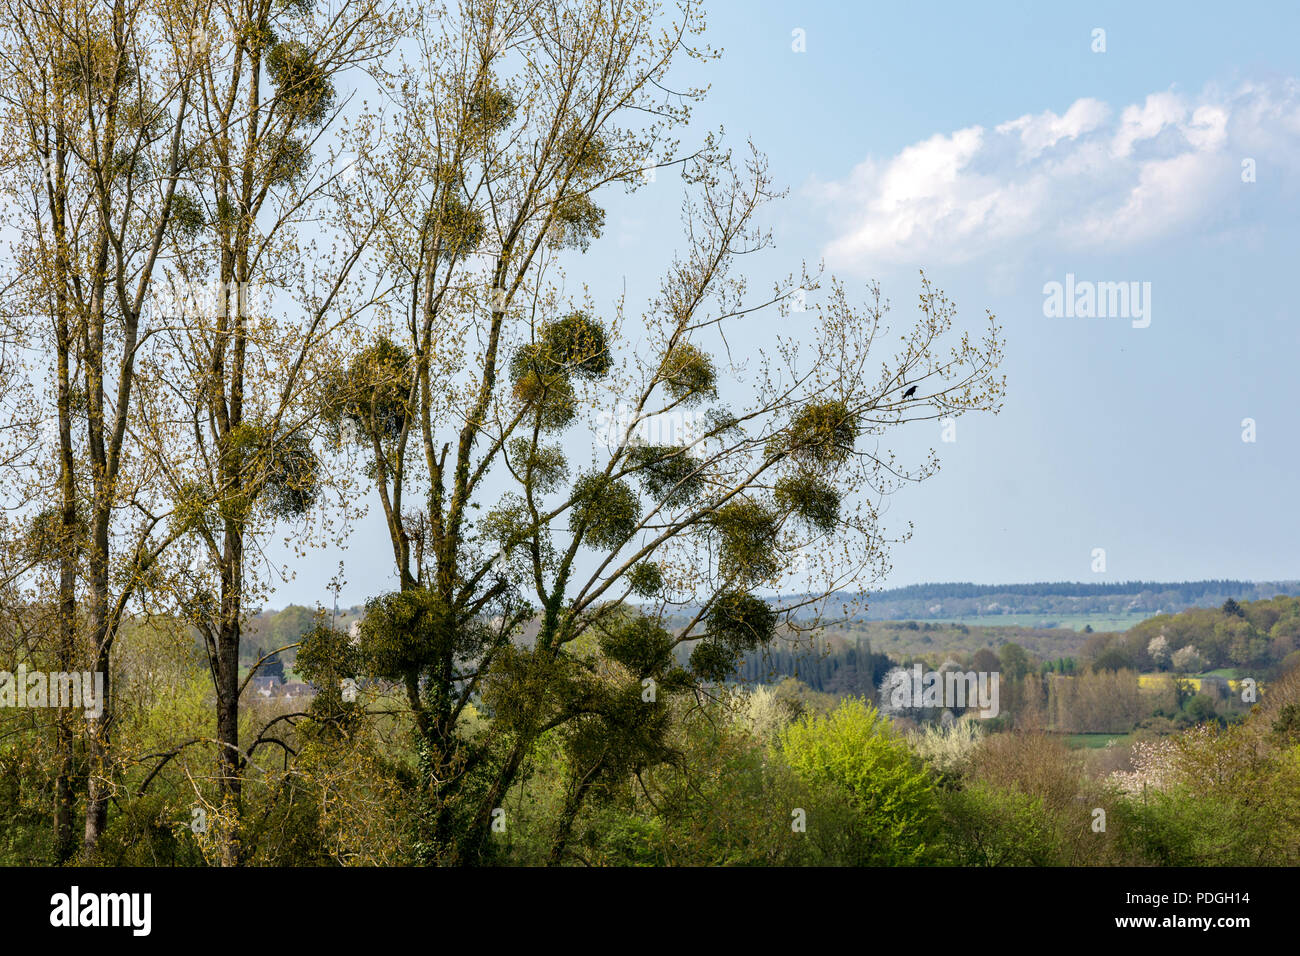 Mistletoe (Viscum album) an obligate stem hemiparasite on trees in early spring. Stock Photo